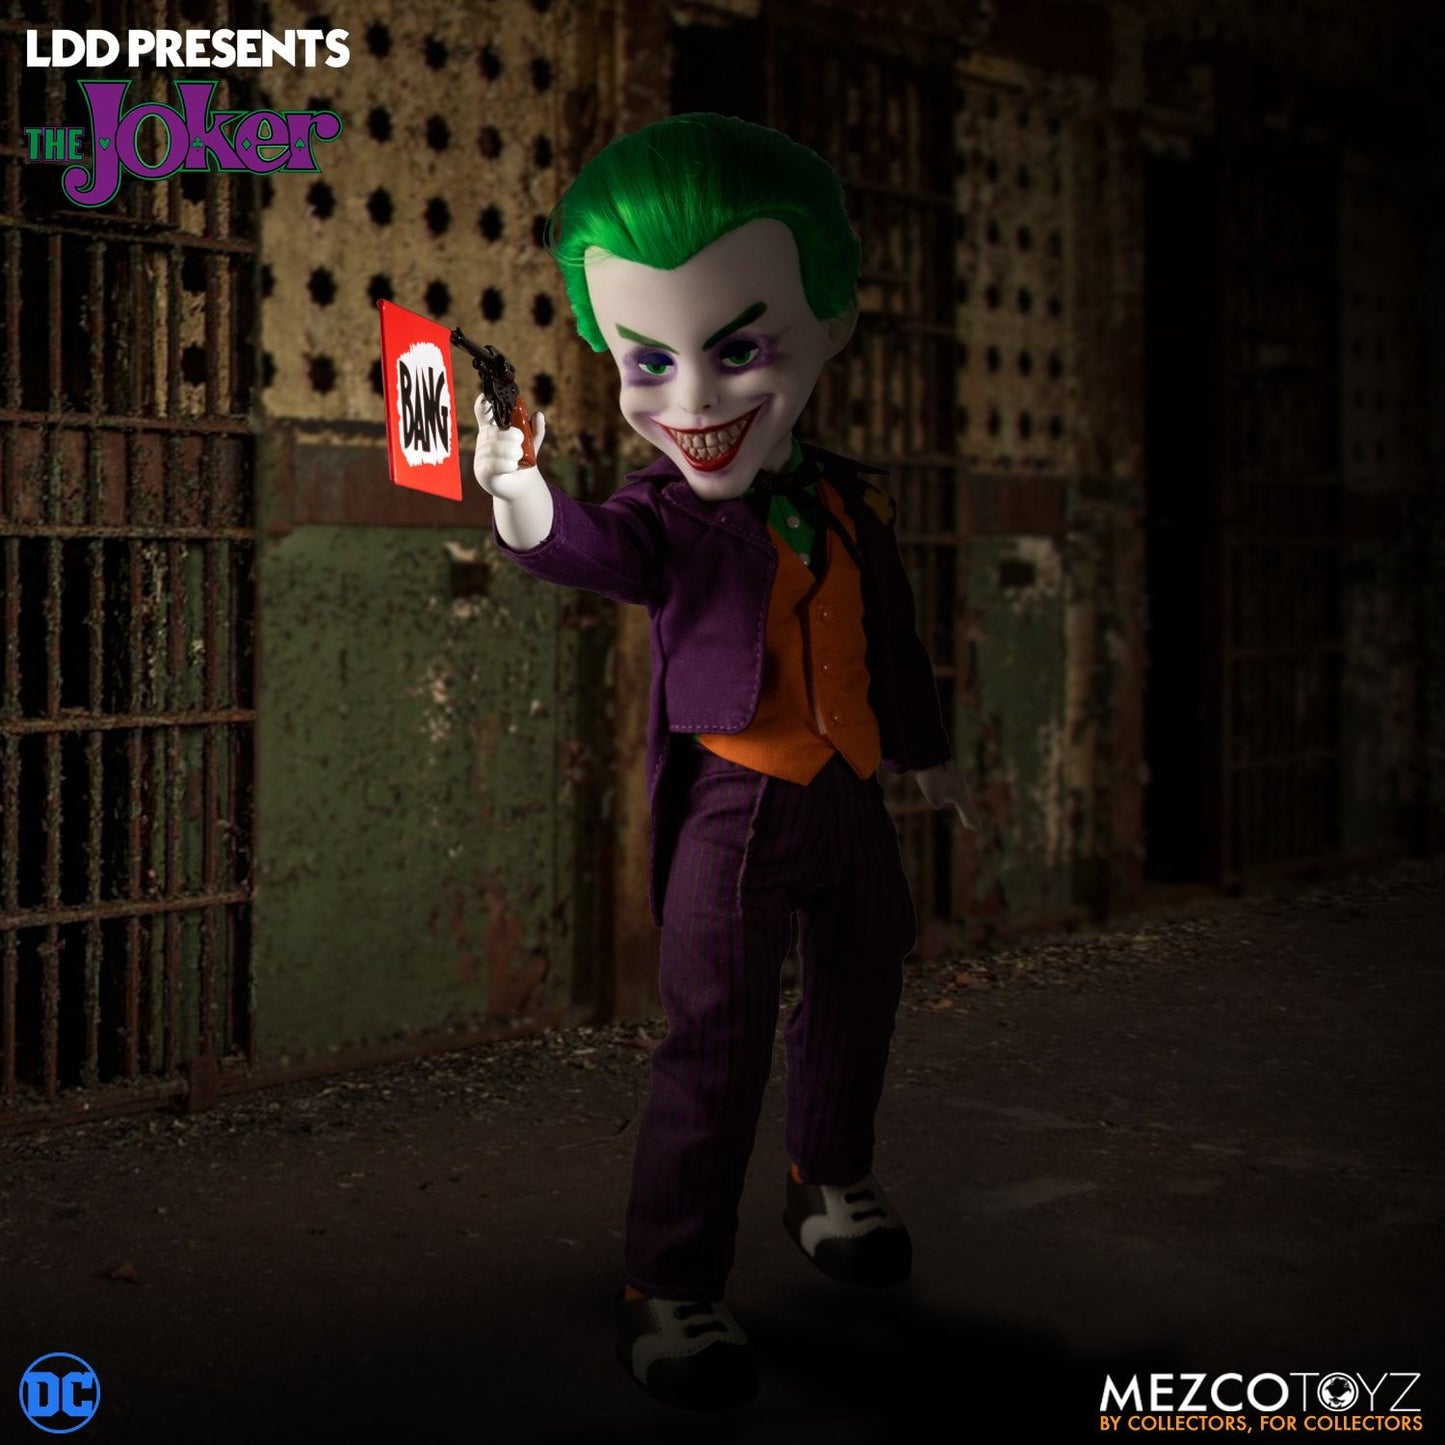 MEZCO TOYZ - LDD Presents - DC Universe: The Joker 10" Tall Figure